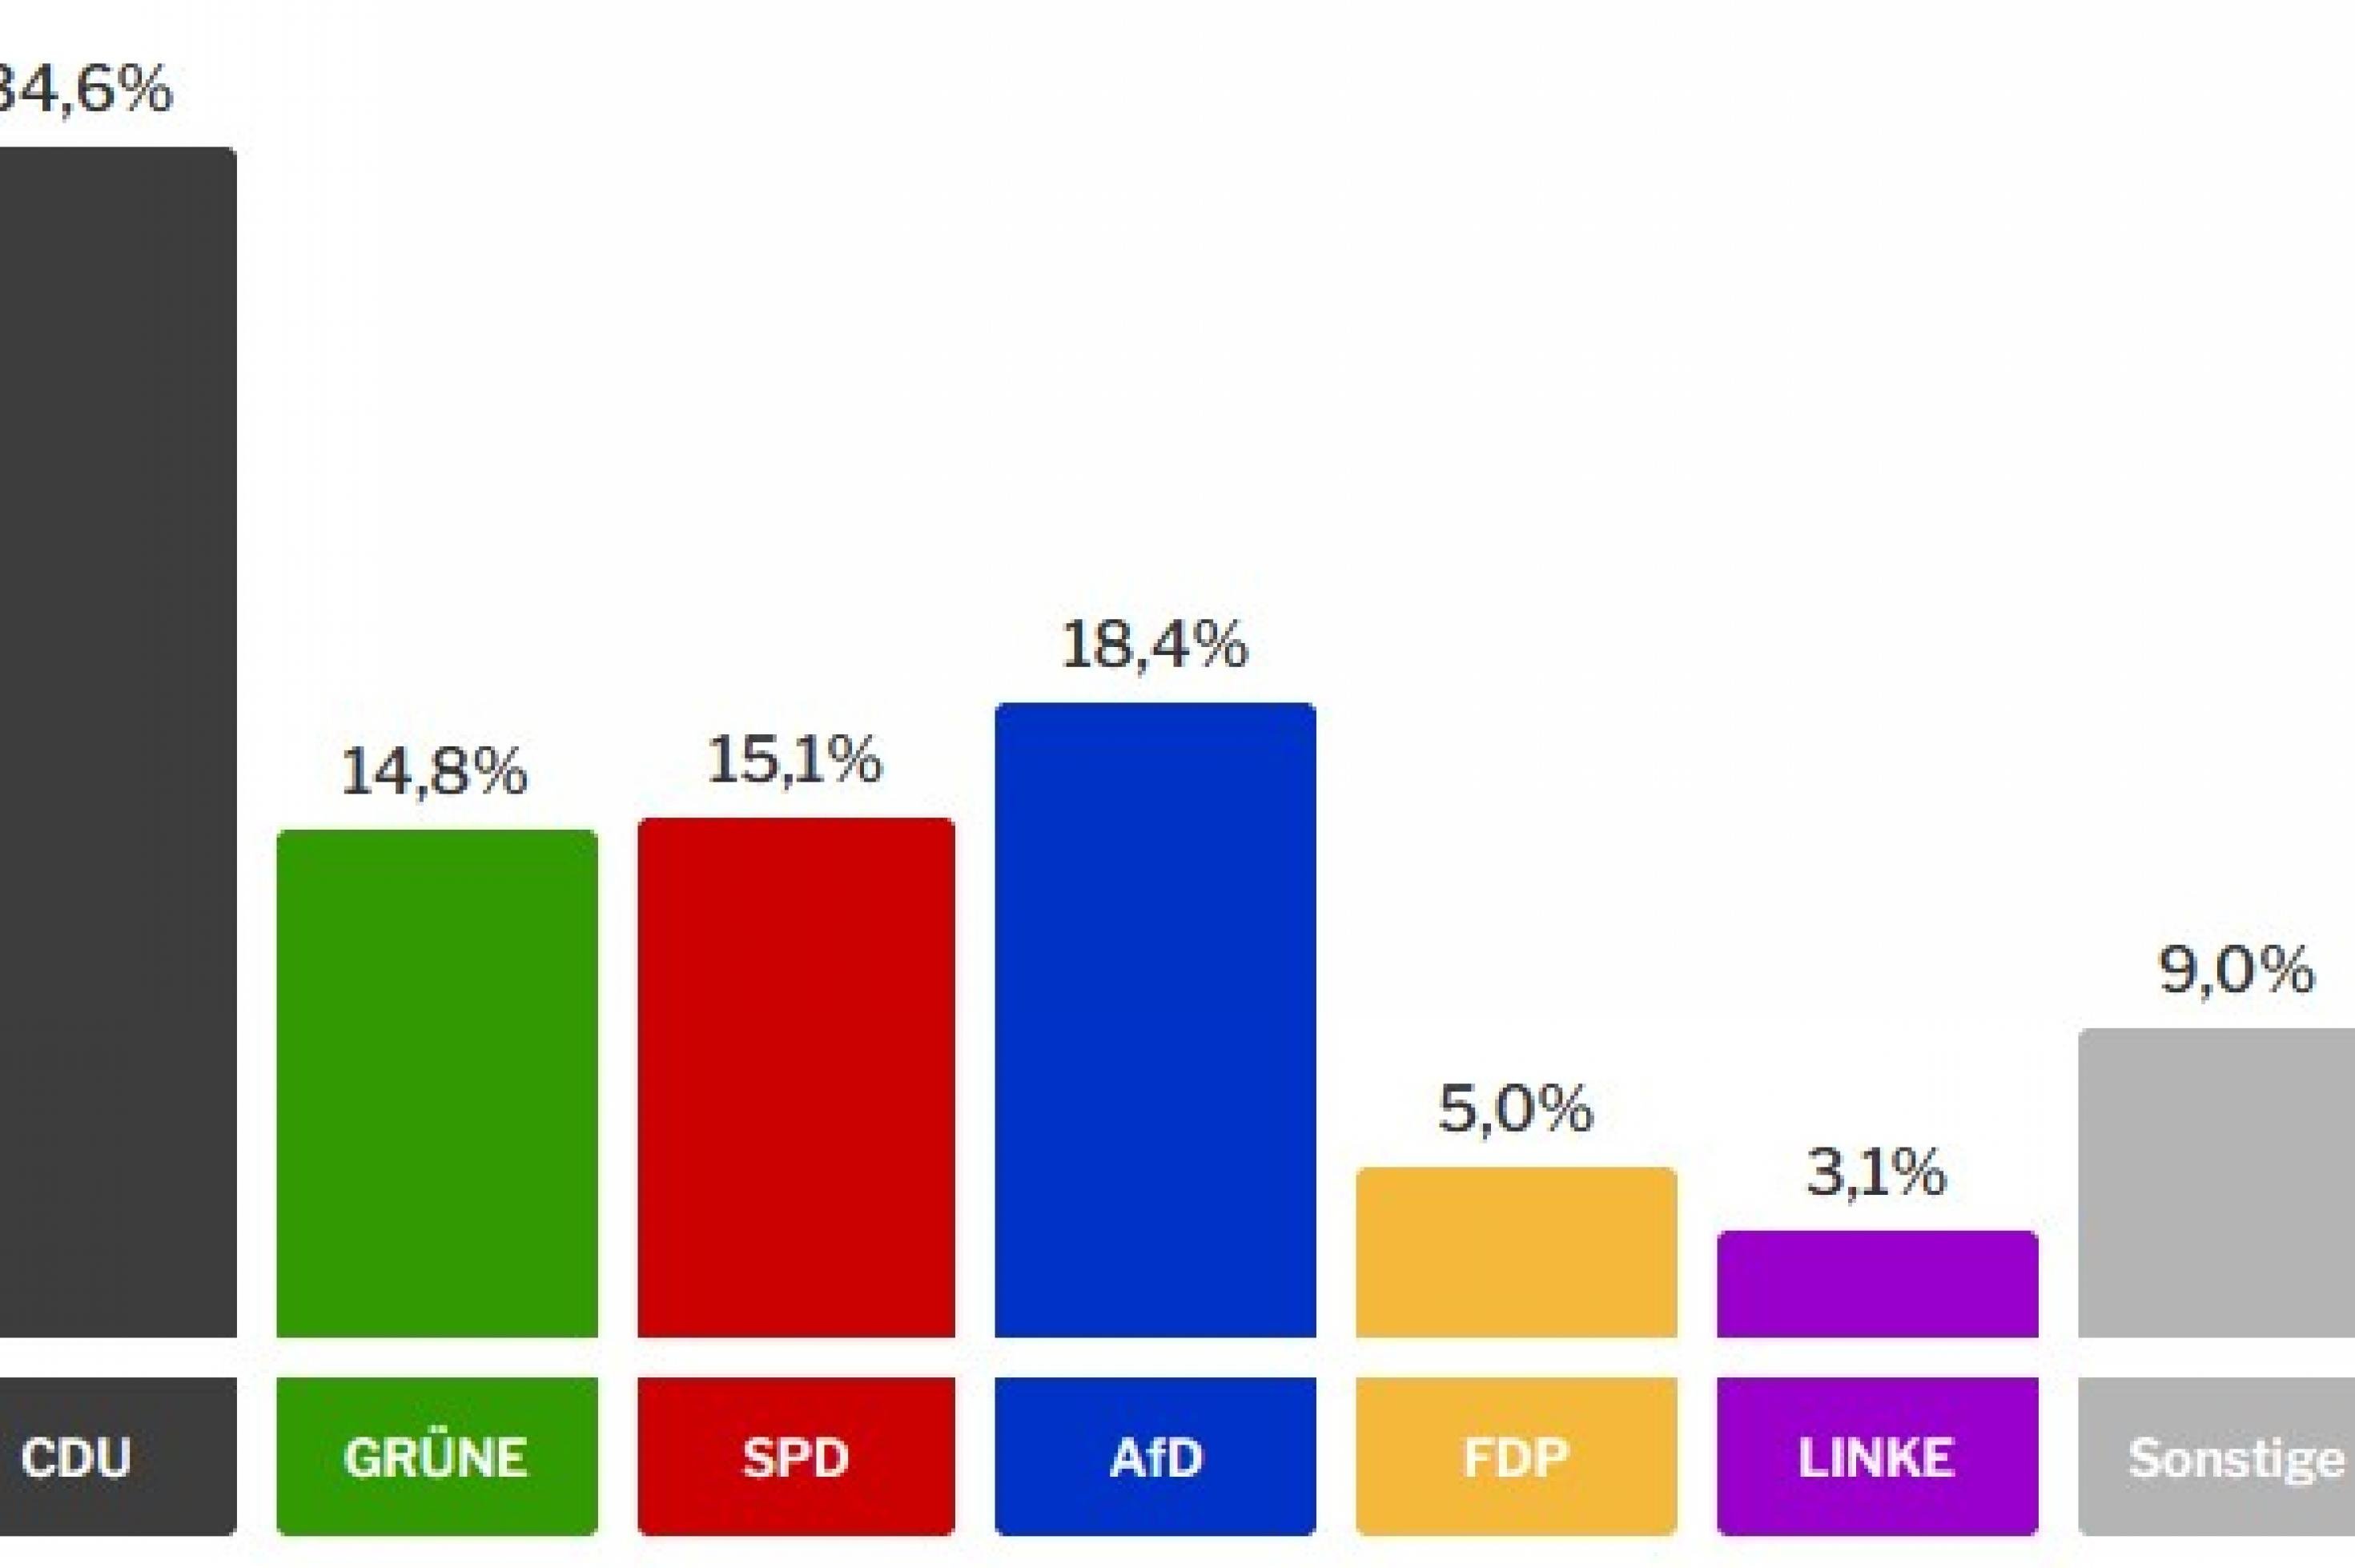 Die Balken zeigen das vorläufige Ergebnis der Landtagswahl in Hessen: CDU: 34,6 %, Grüne: 14,8 %, SPD: 15,1 %, AfD: 18,4 %, FDP: 5 %, Linke: 3,1 %